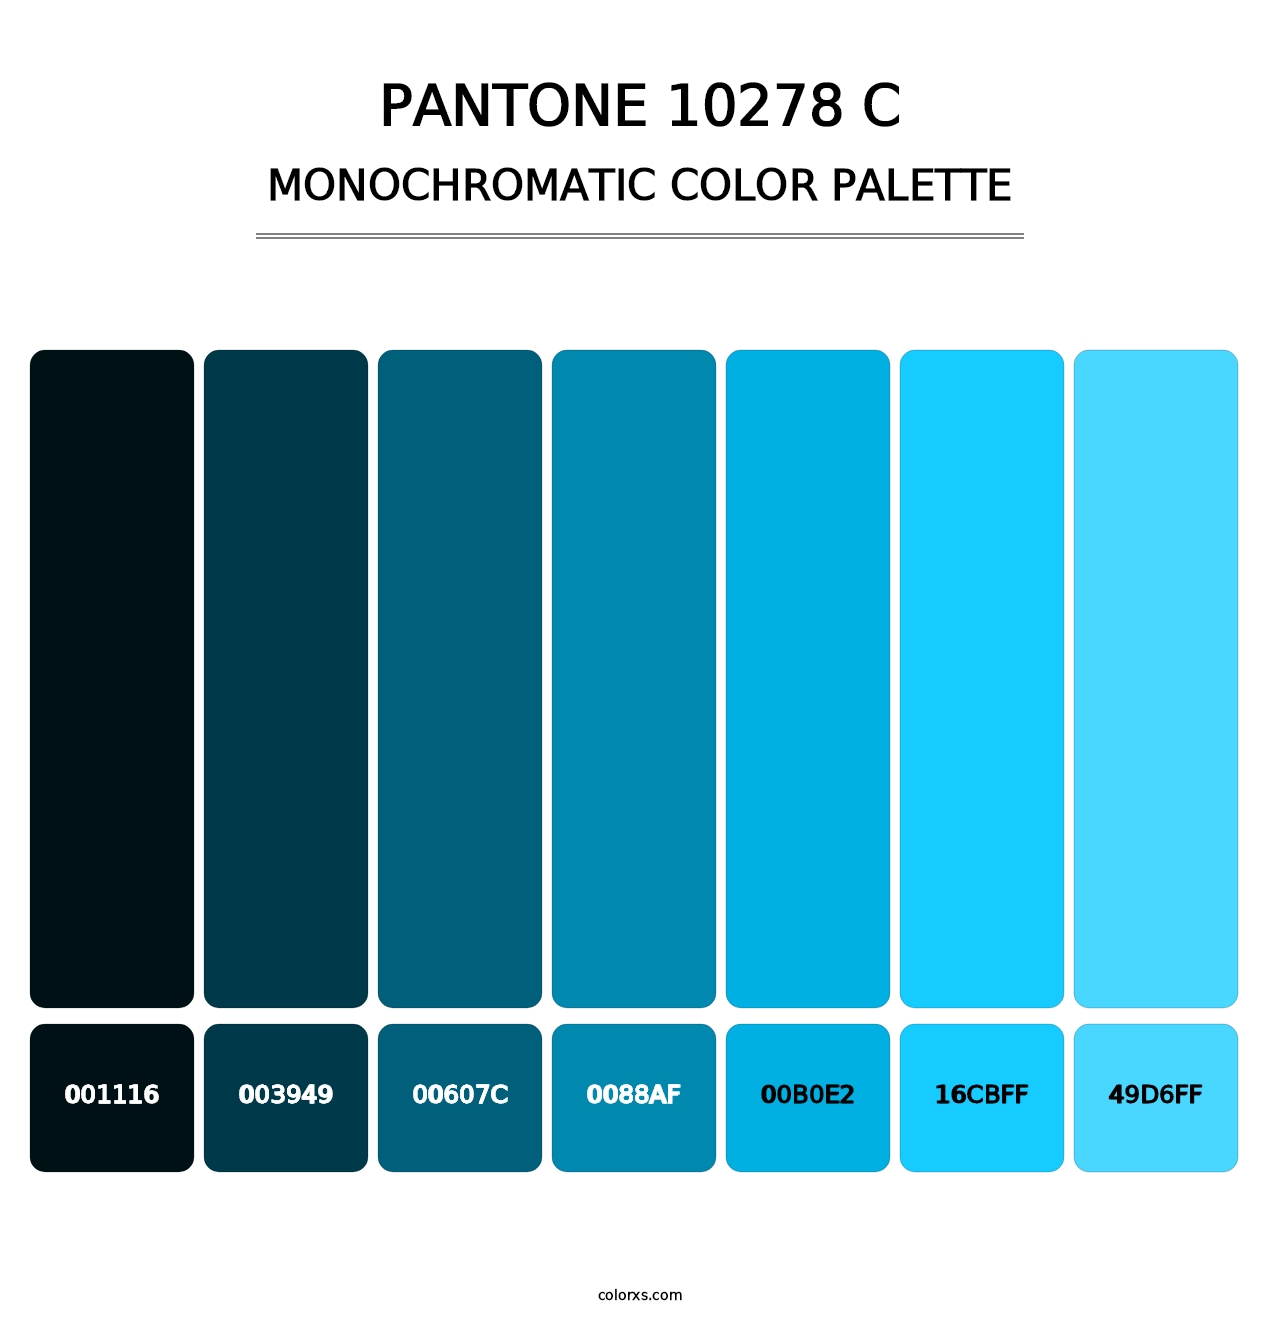 PANTONE 10278 C - Monochromatic Color Palette